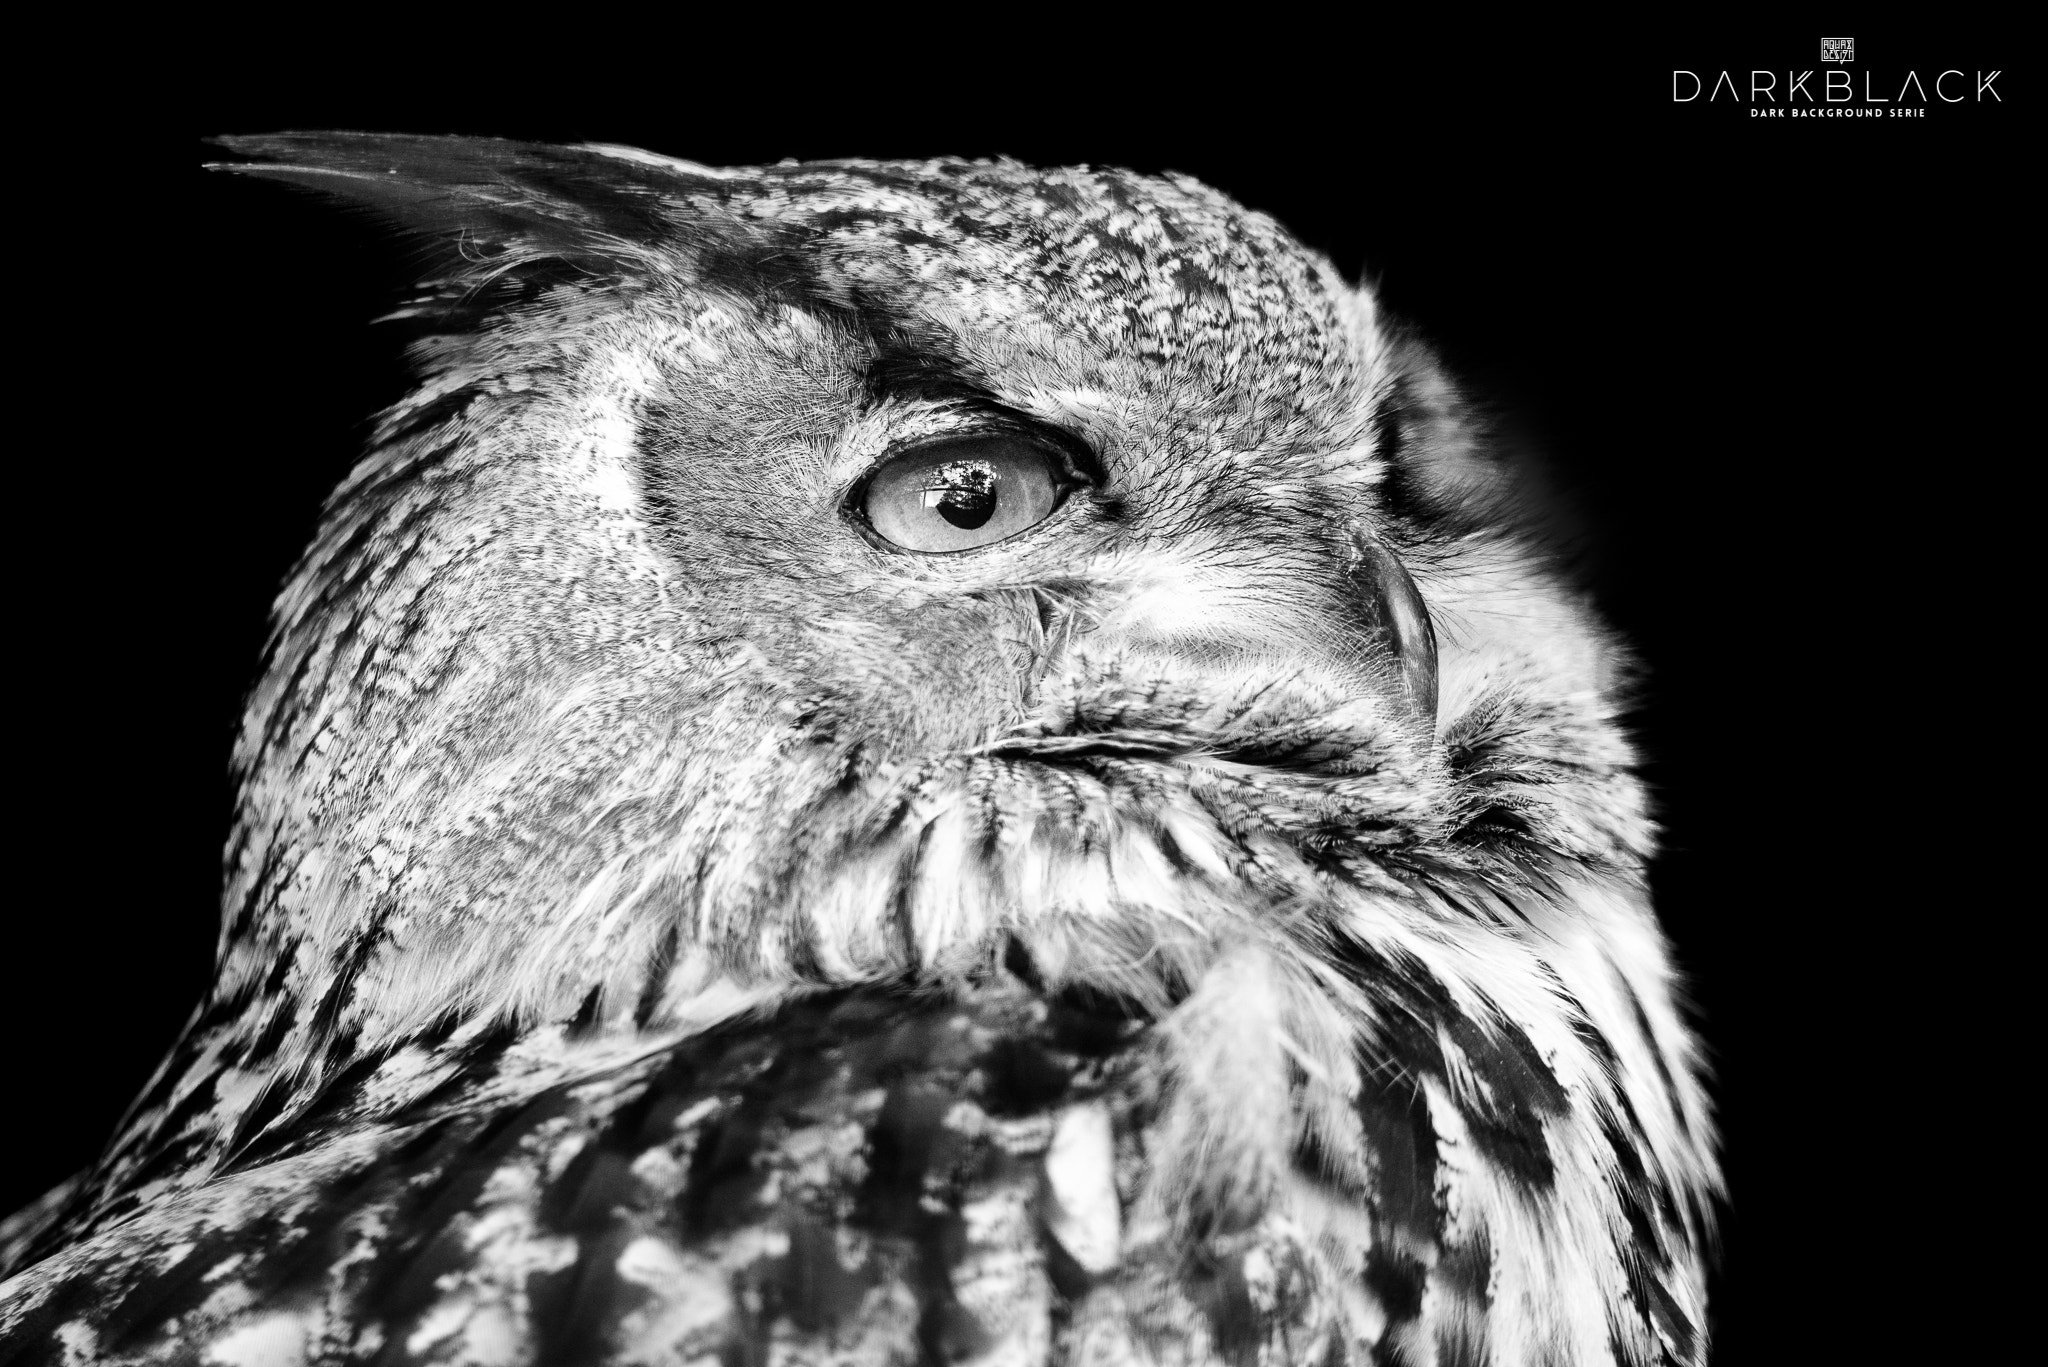 Nikon D800E + Tamron SP 150-600mm F5-6.3 Di VC USD sample photo. Eagle owl photography